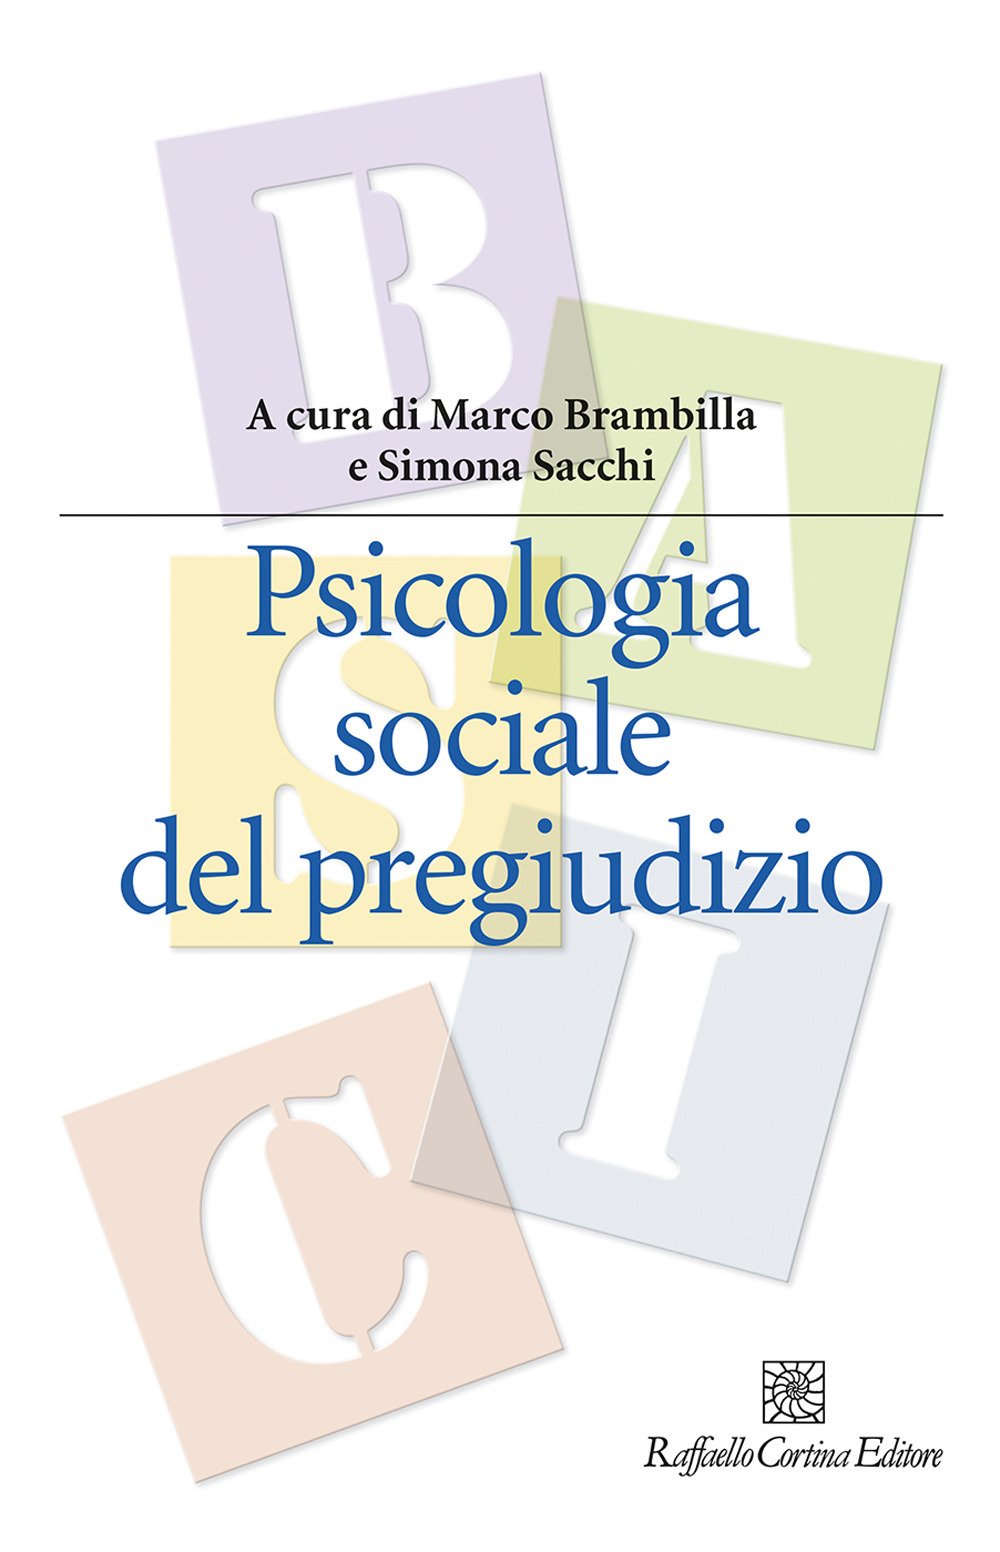 Image of Psicologia sociale del pregiudizio